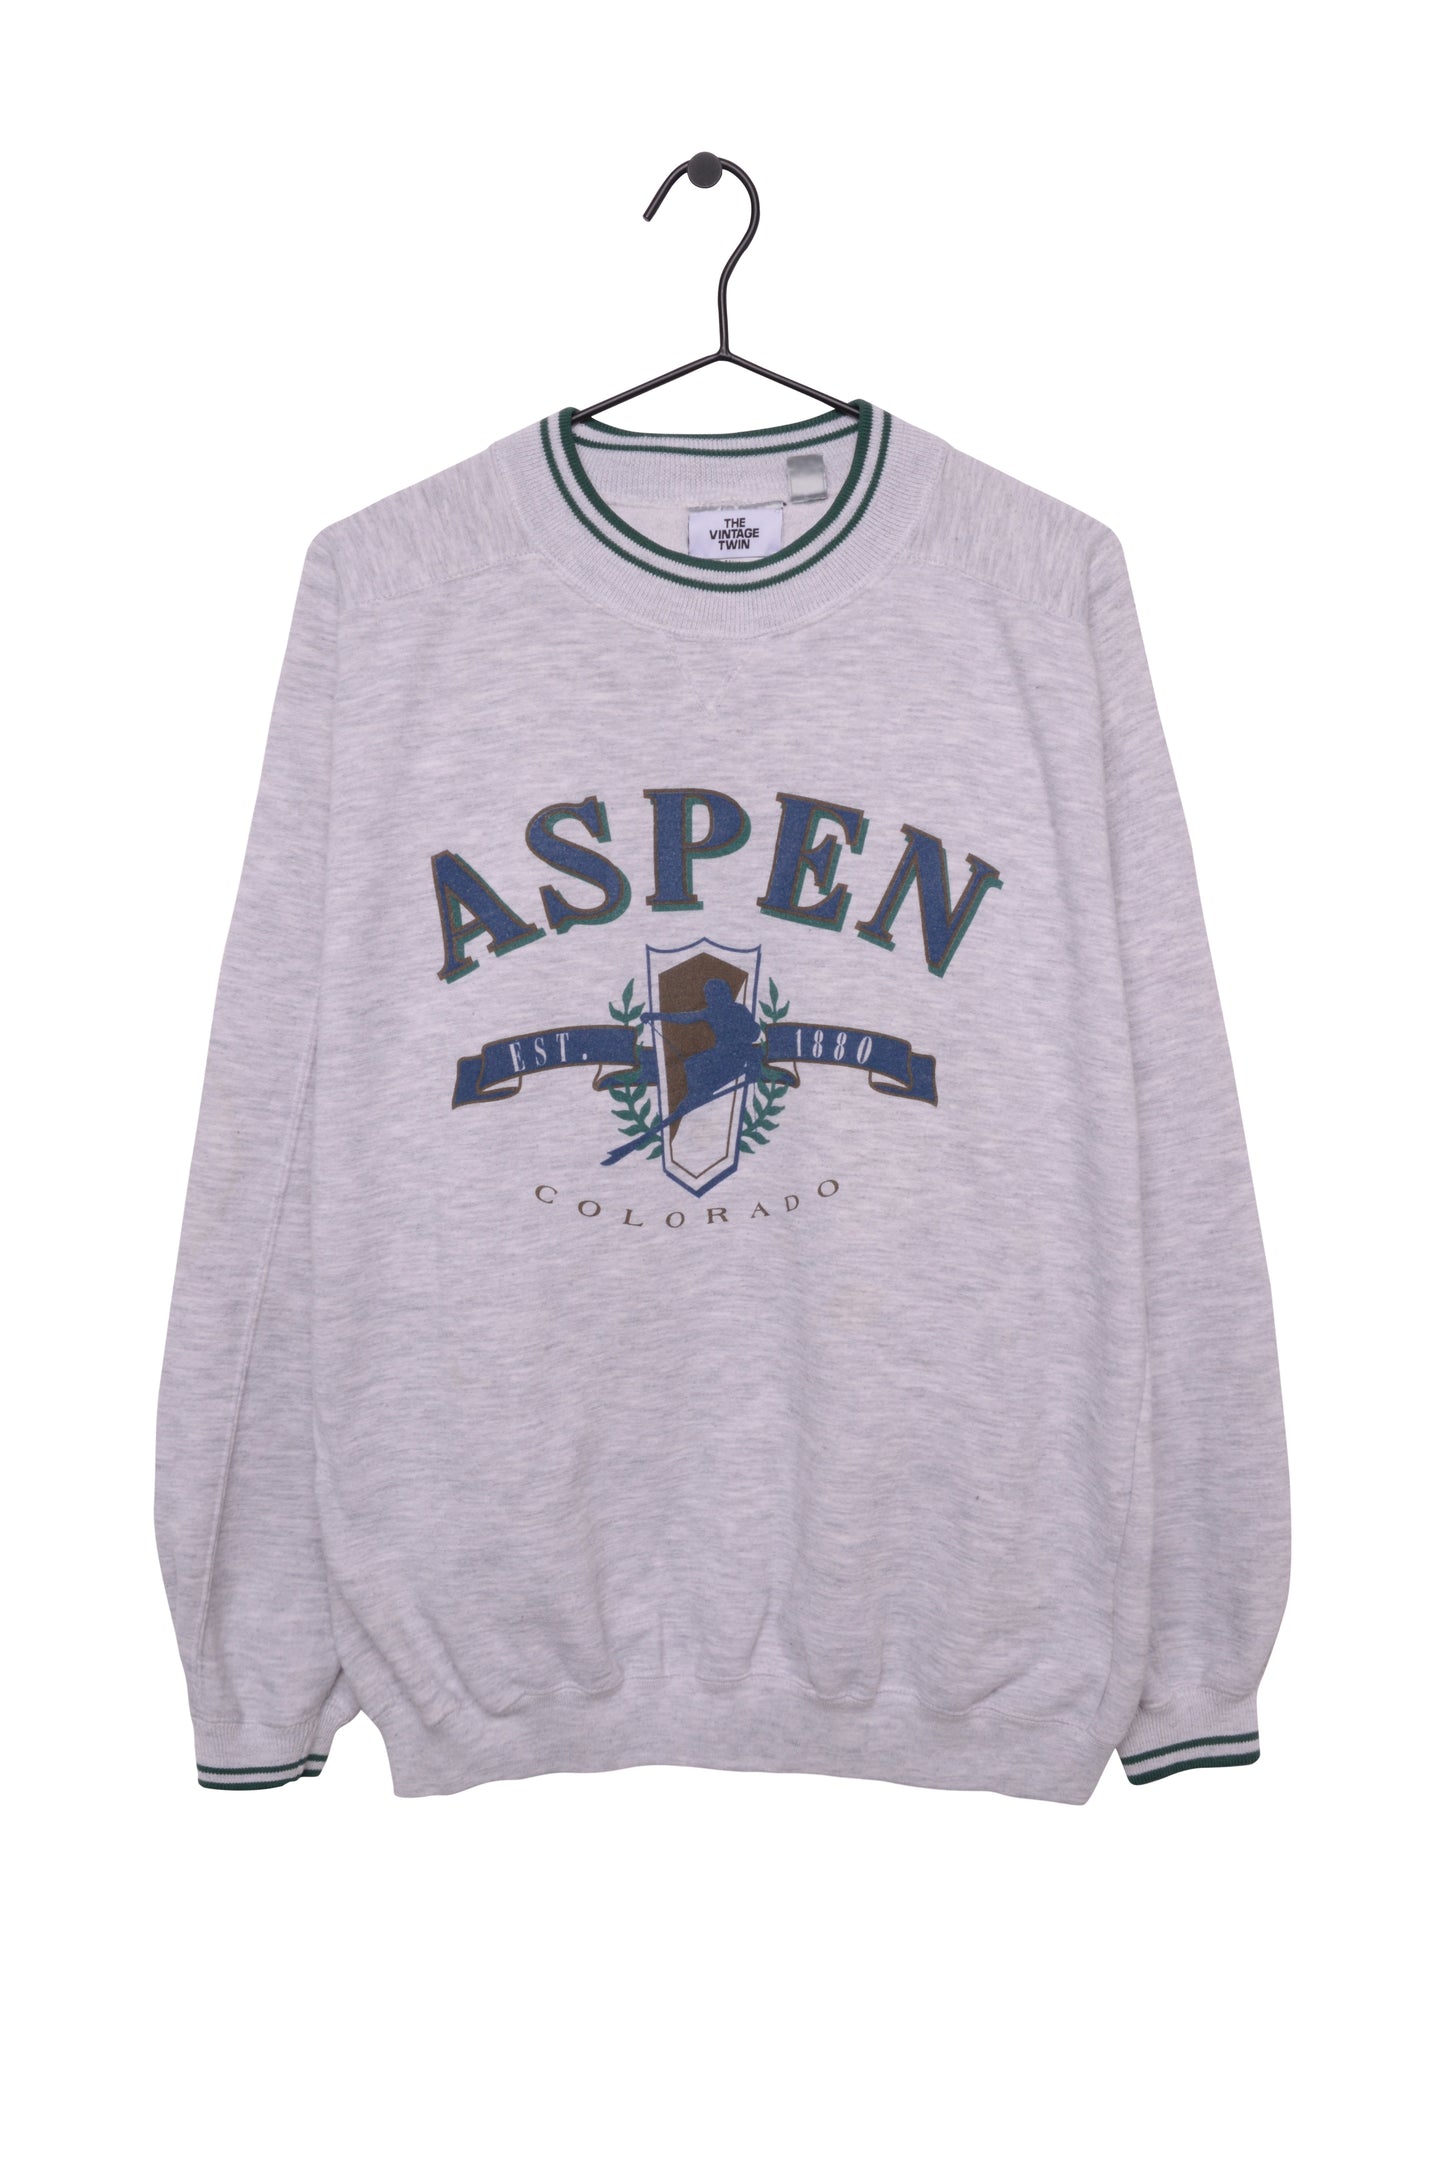 Aspen Colorado Sweatshirt